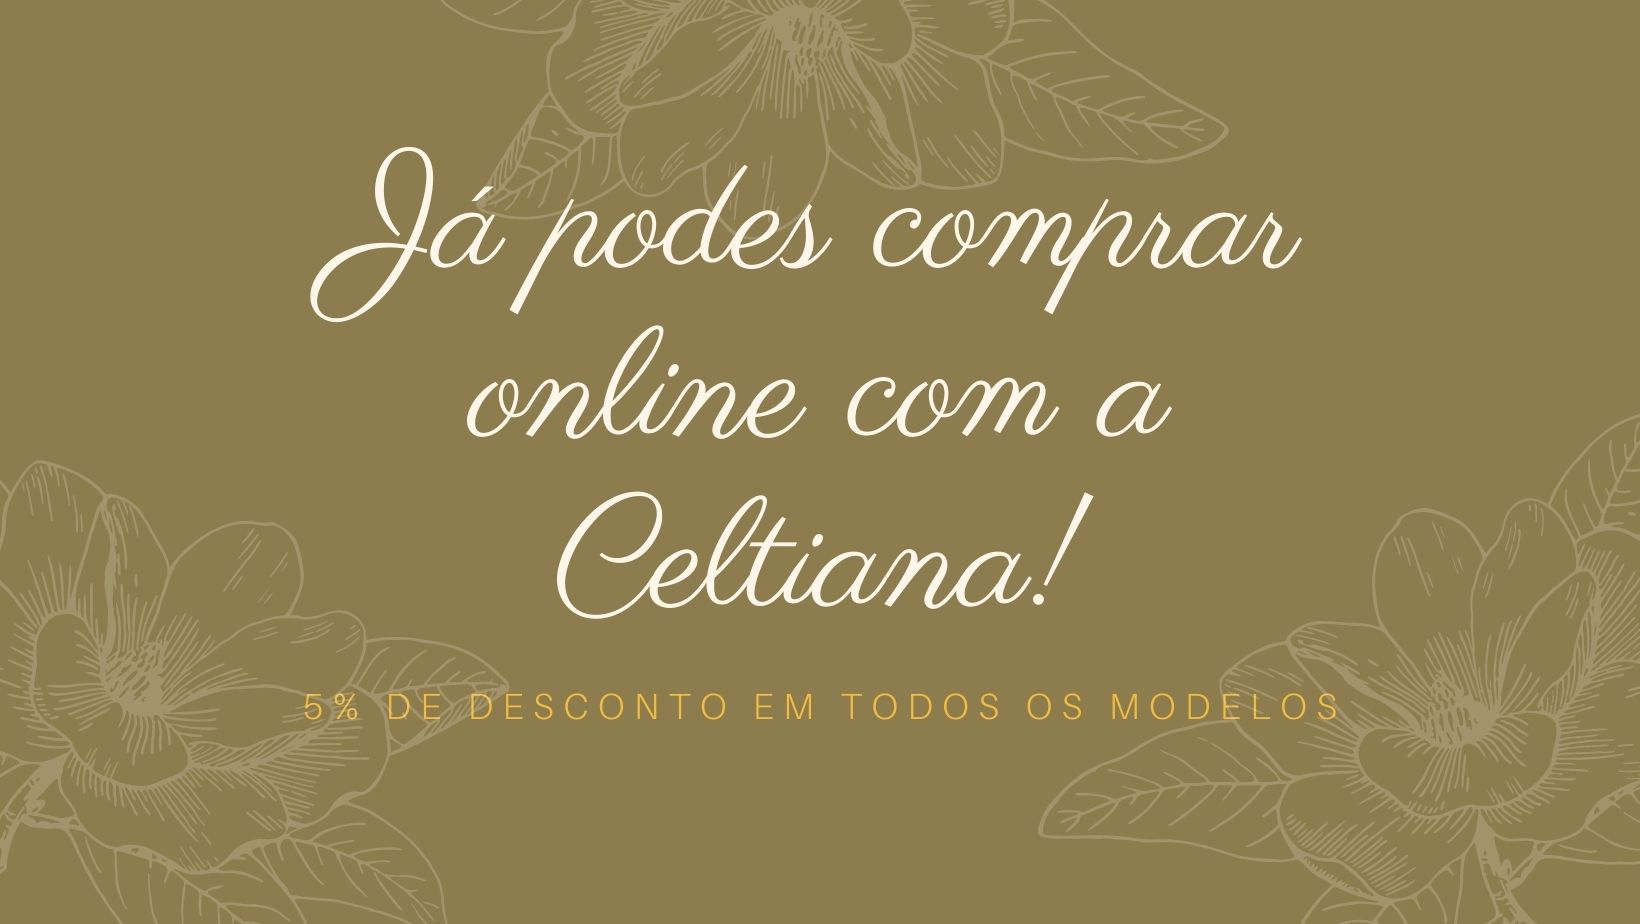 Novo website Celtiana